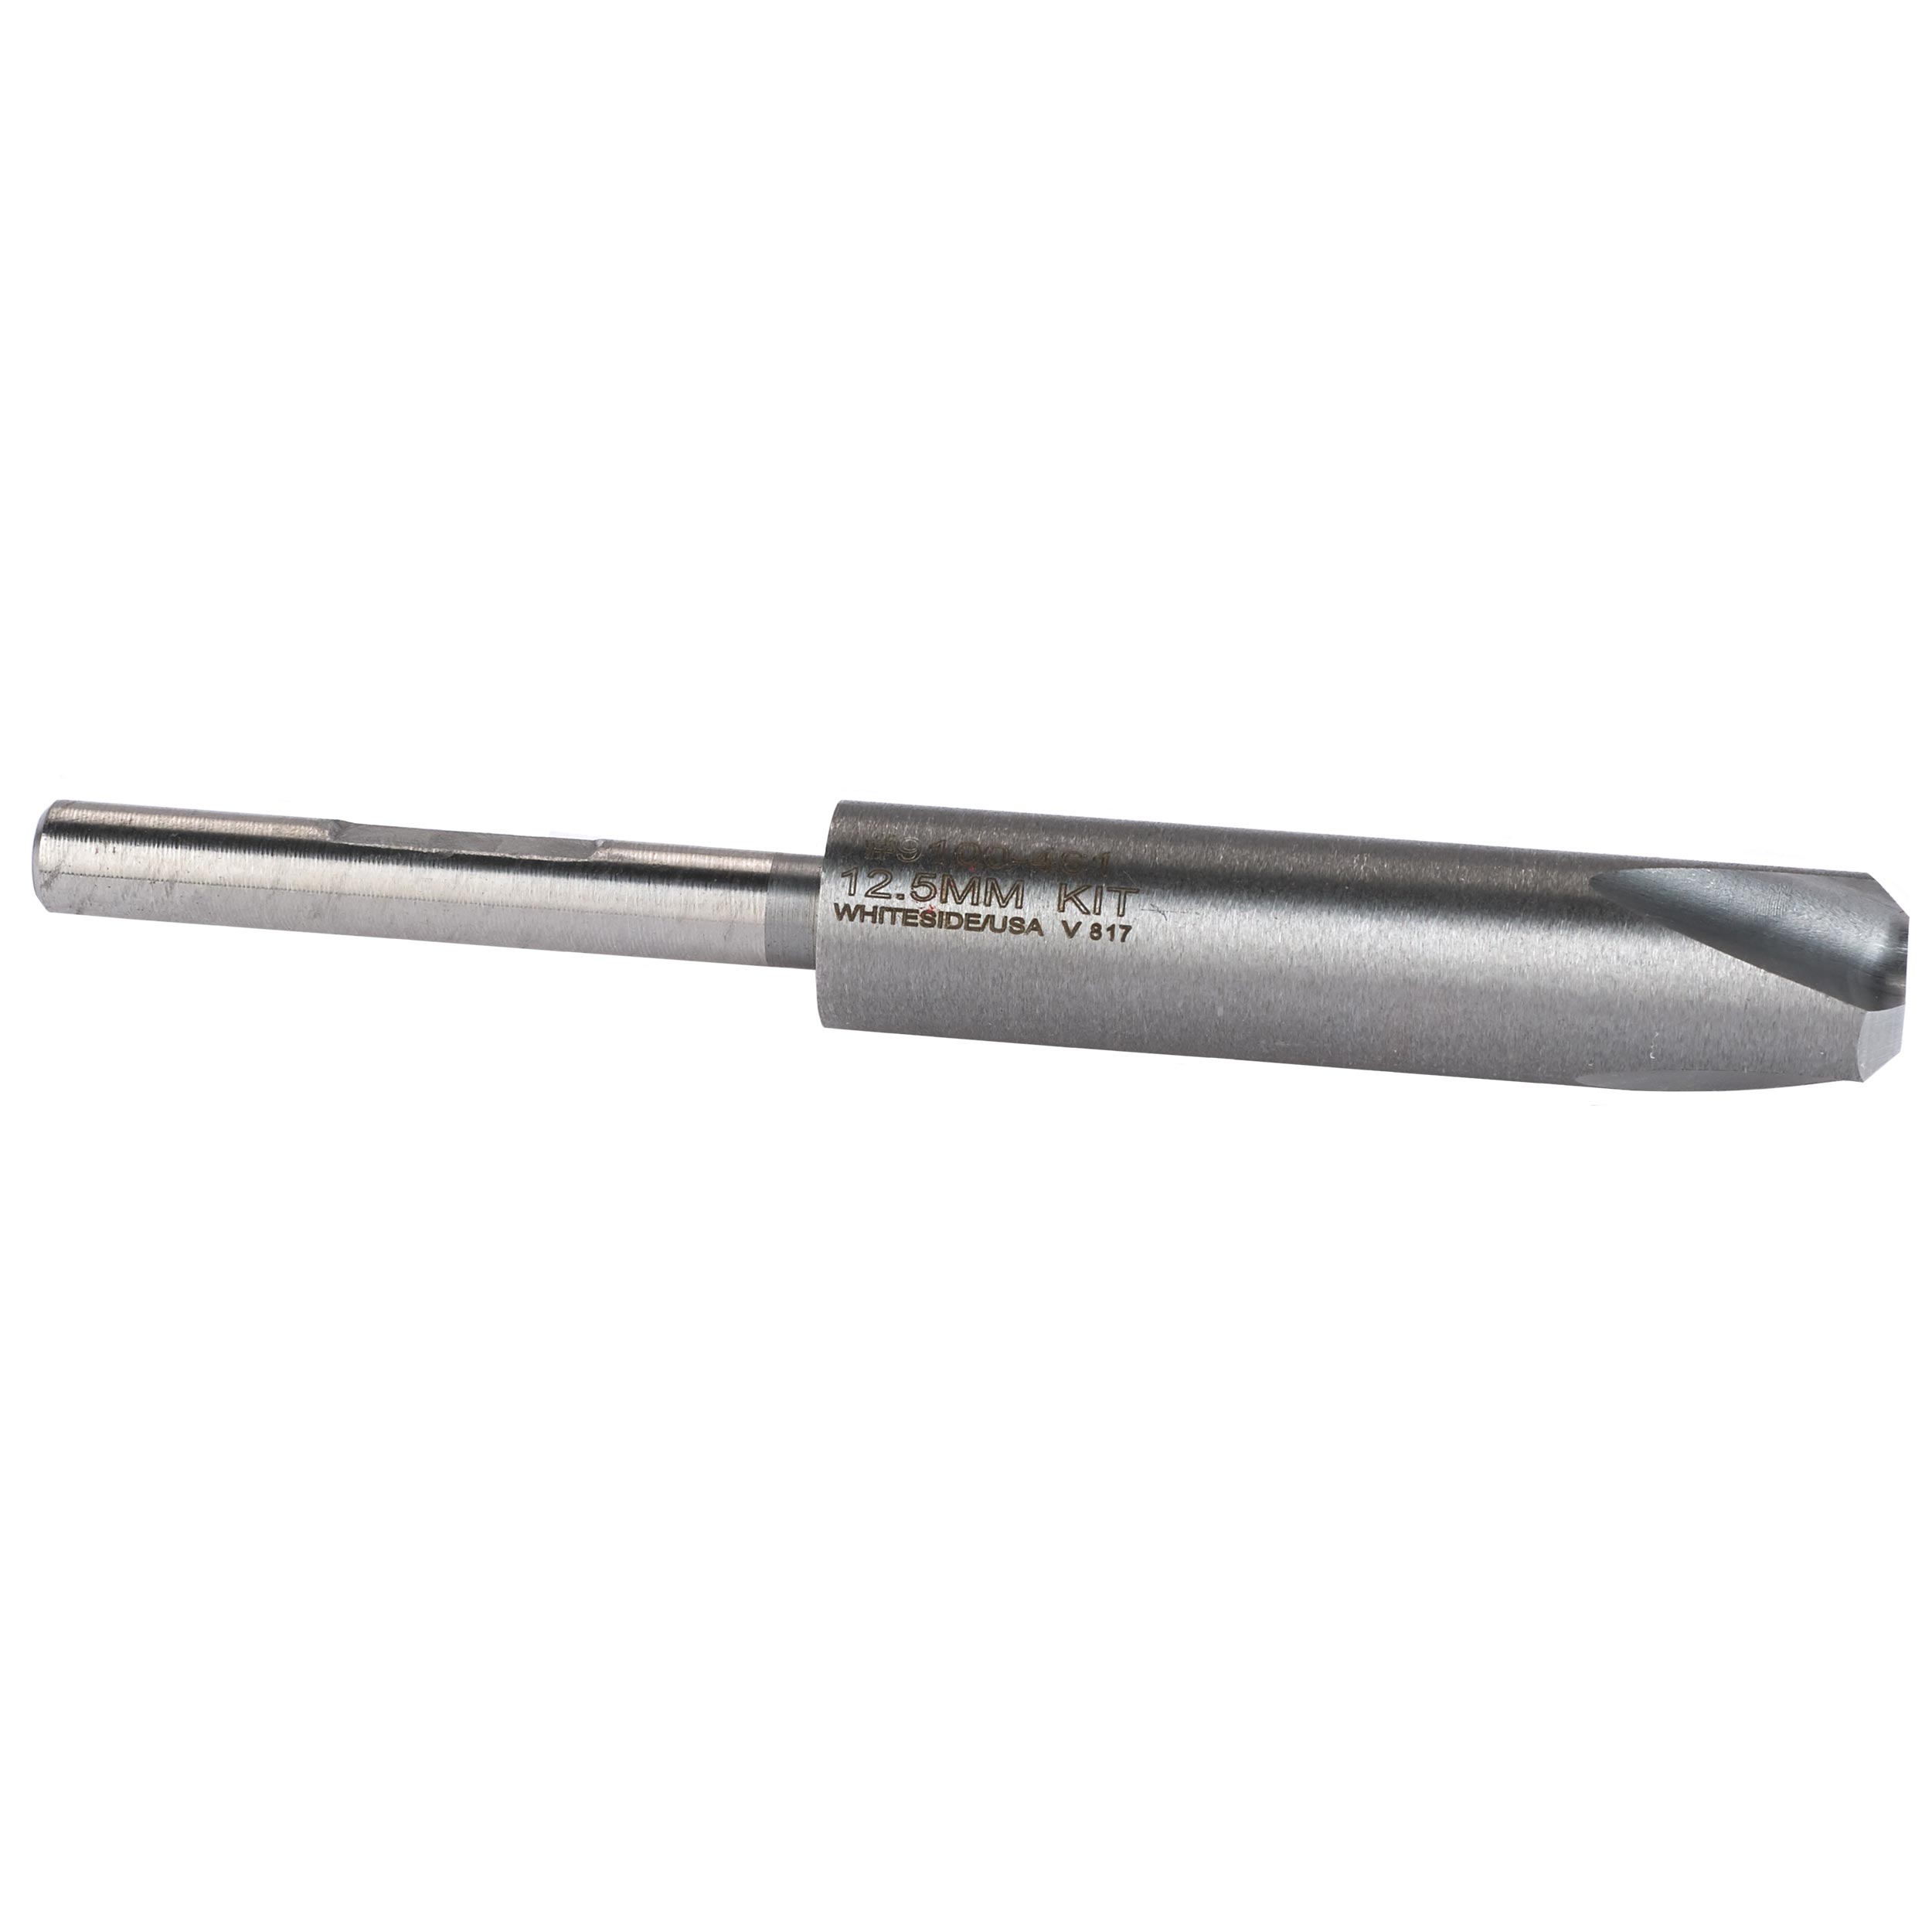 Pen Reamer 12.5mm Pilot Shaft